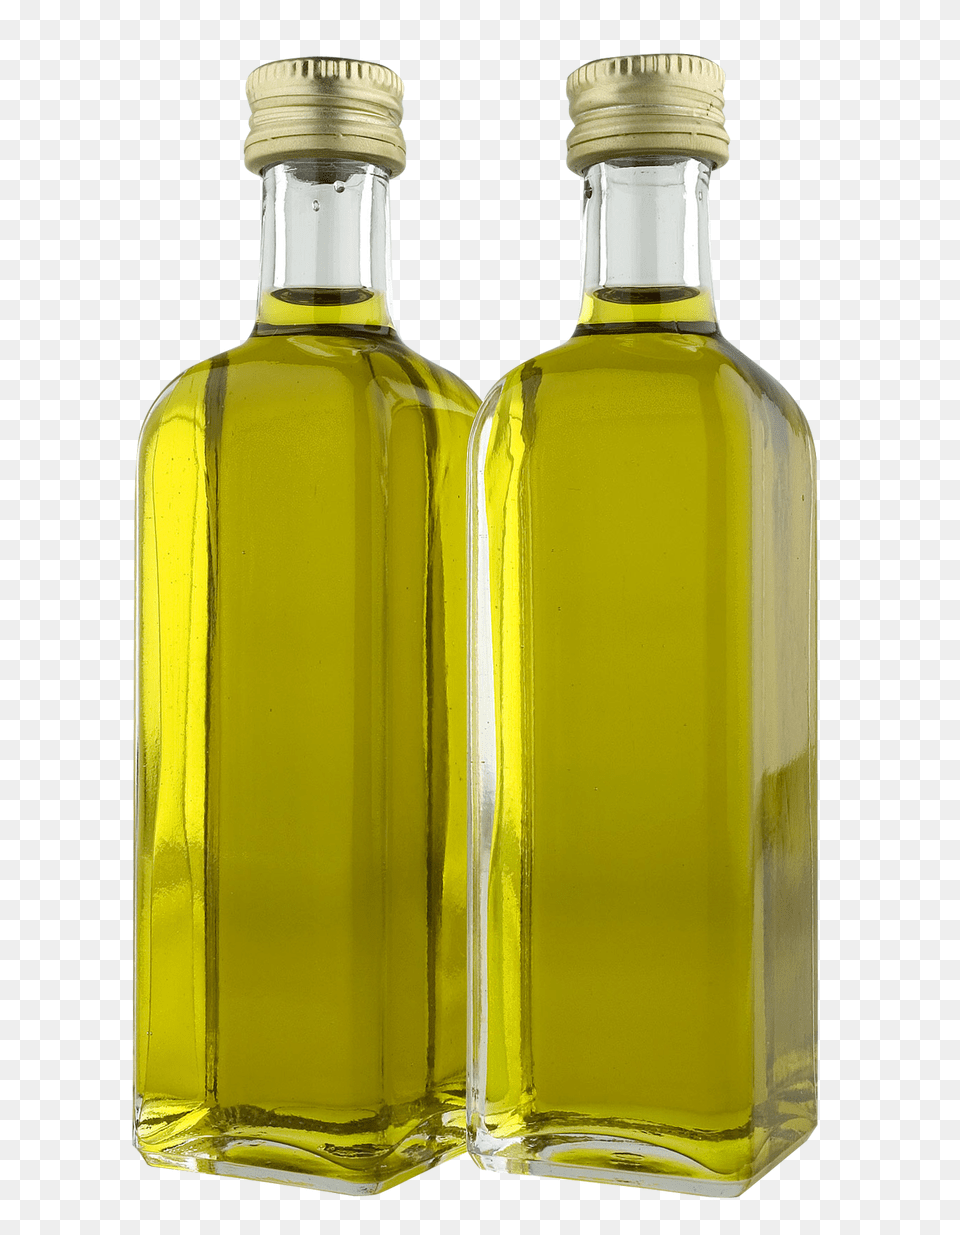 Olive Oil Bottles, Cooking Oil, Food, Bottle, Shaker Free Png